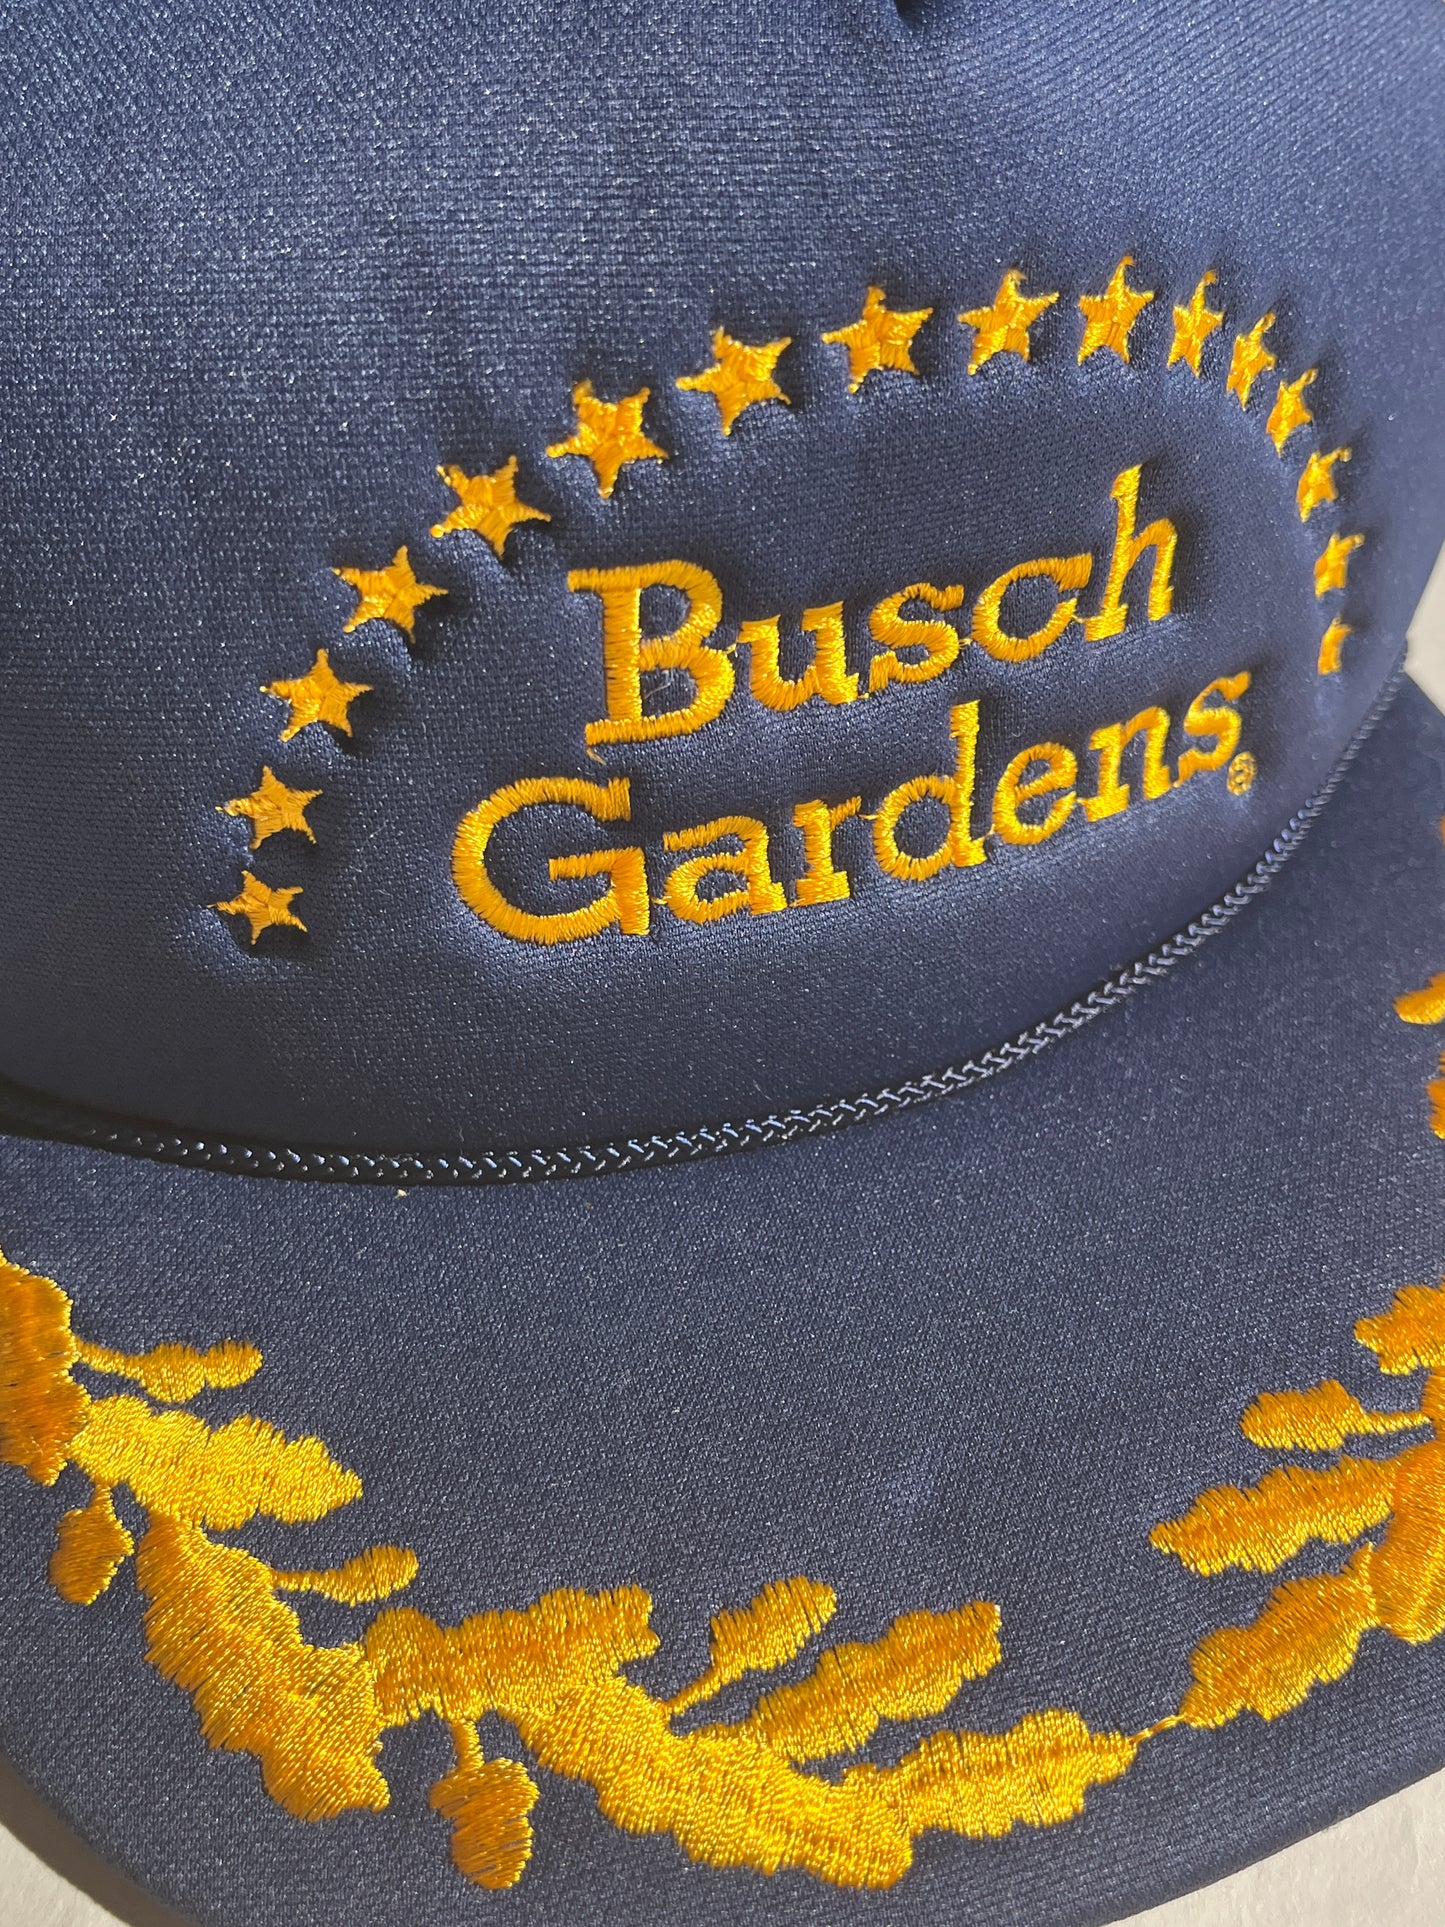 Vintage Busch Gardens Hat Snapback Embroidered